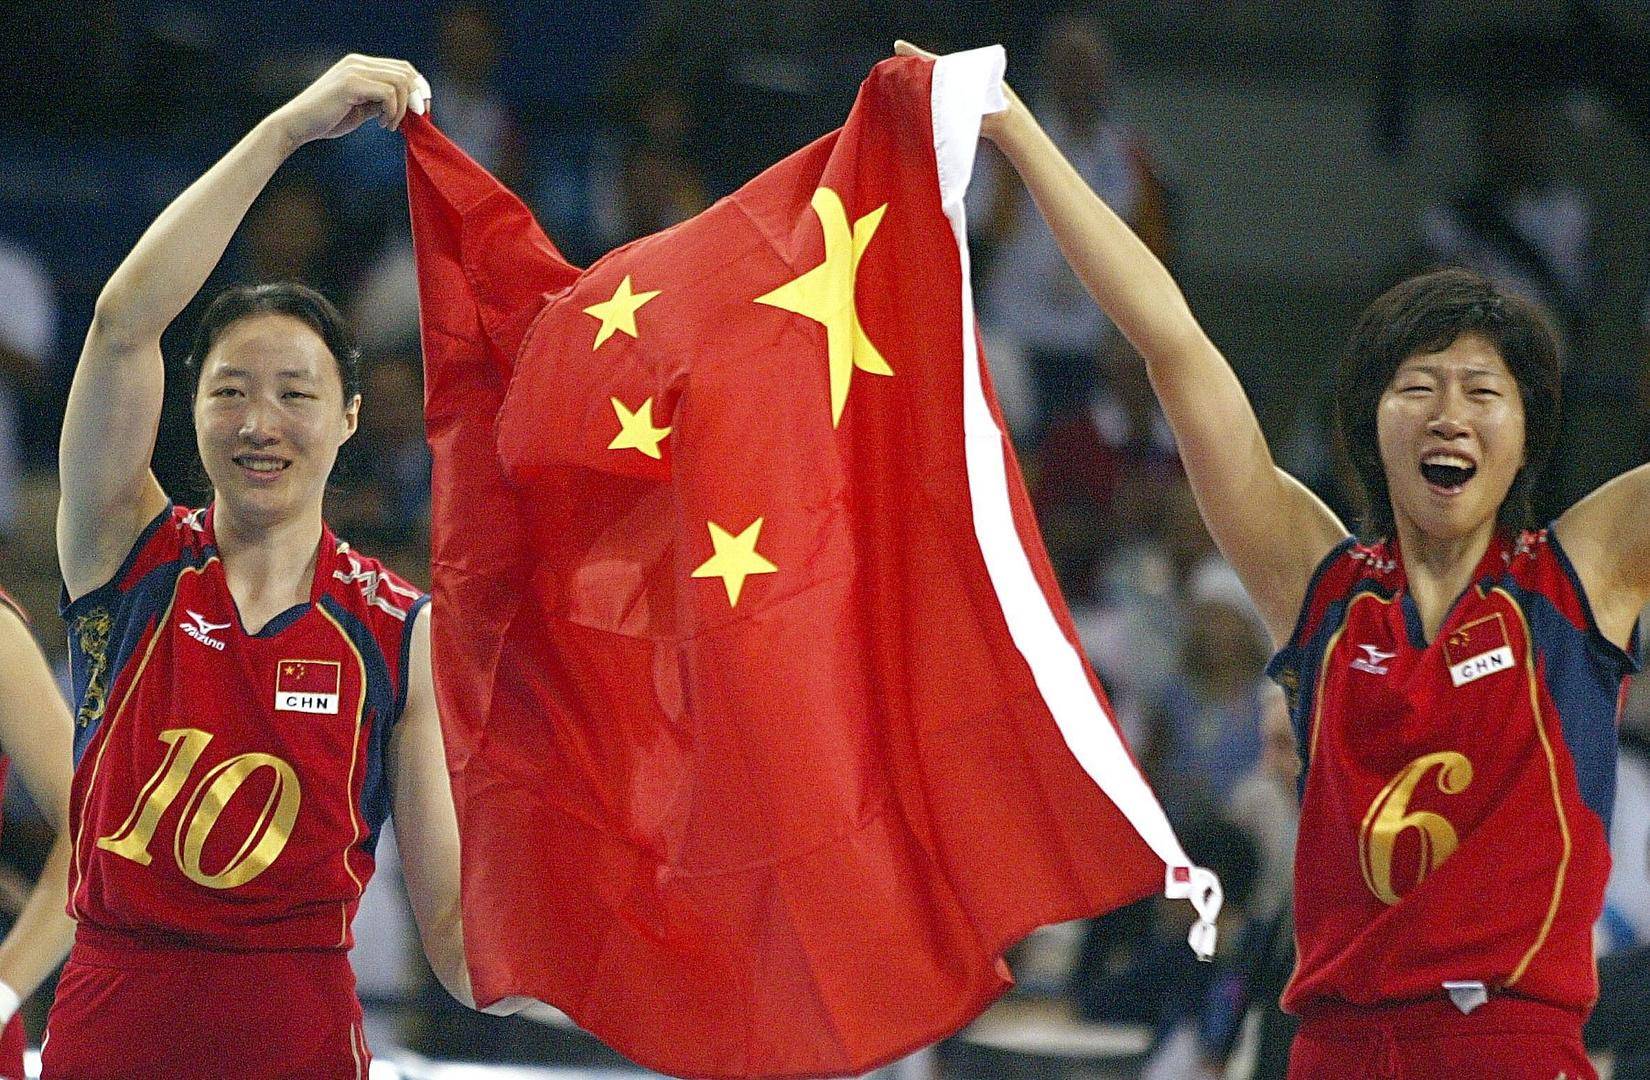 2004年雅典奥运会女排决赛后,中国女排队员陈静(左)与李珊举起国旗